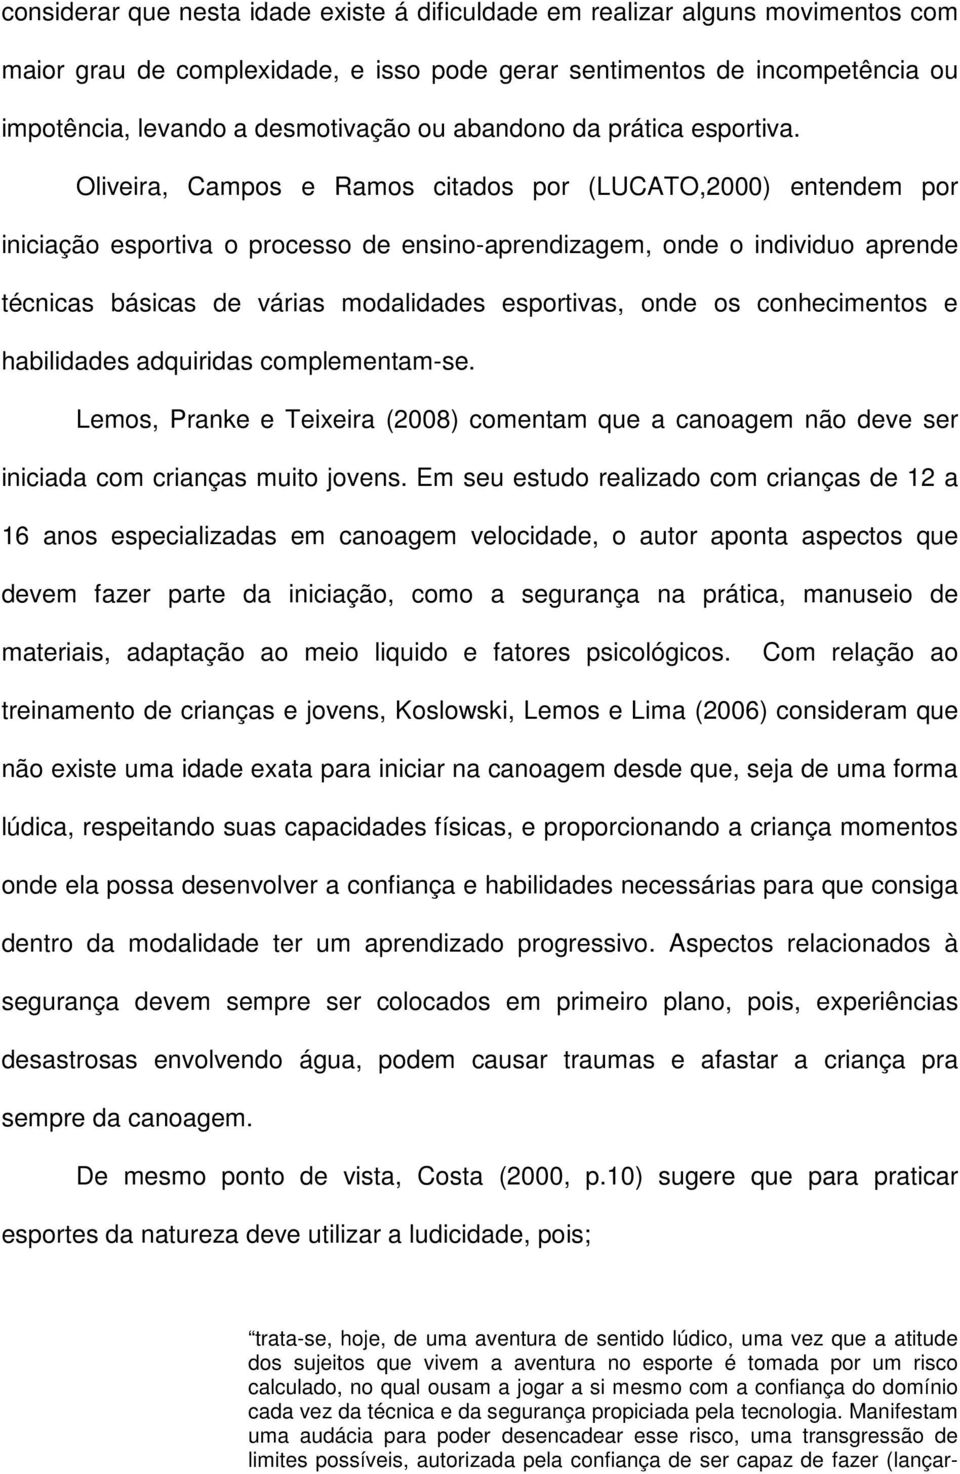 Oliveira, Campos e Ramos citados por (LUCATO,2000) entendem por iniciação esportiva o processo de ensino-aprendizagem, onde o individuo aprende técnicas básicas de várias modalidades esportivas, onde